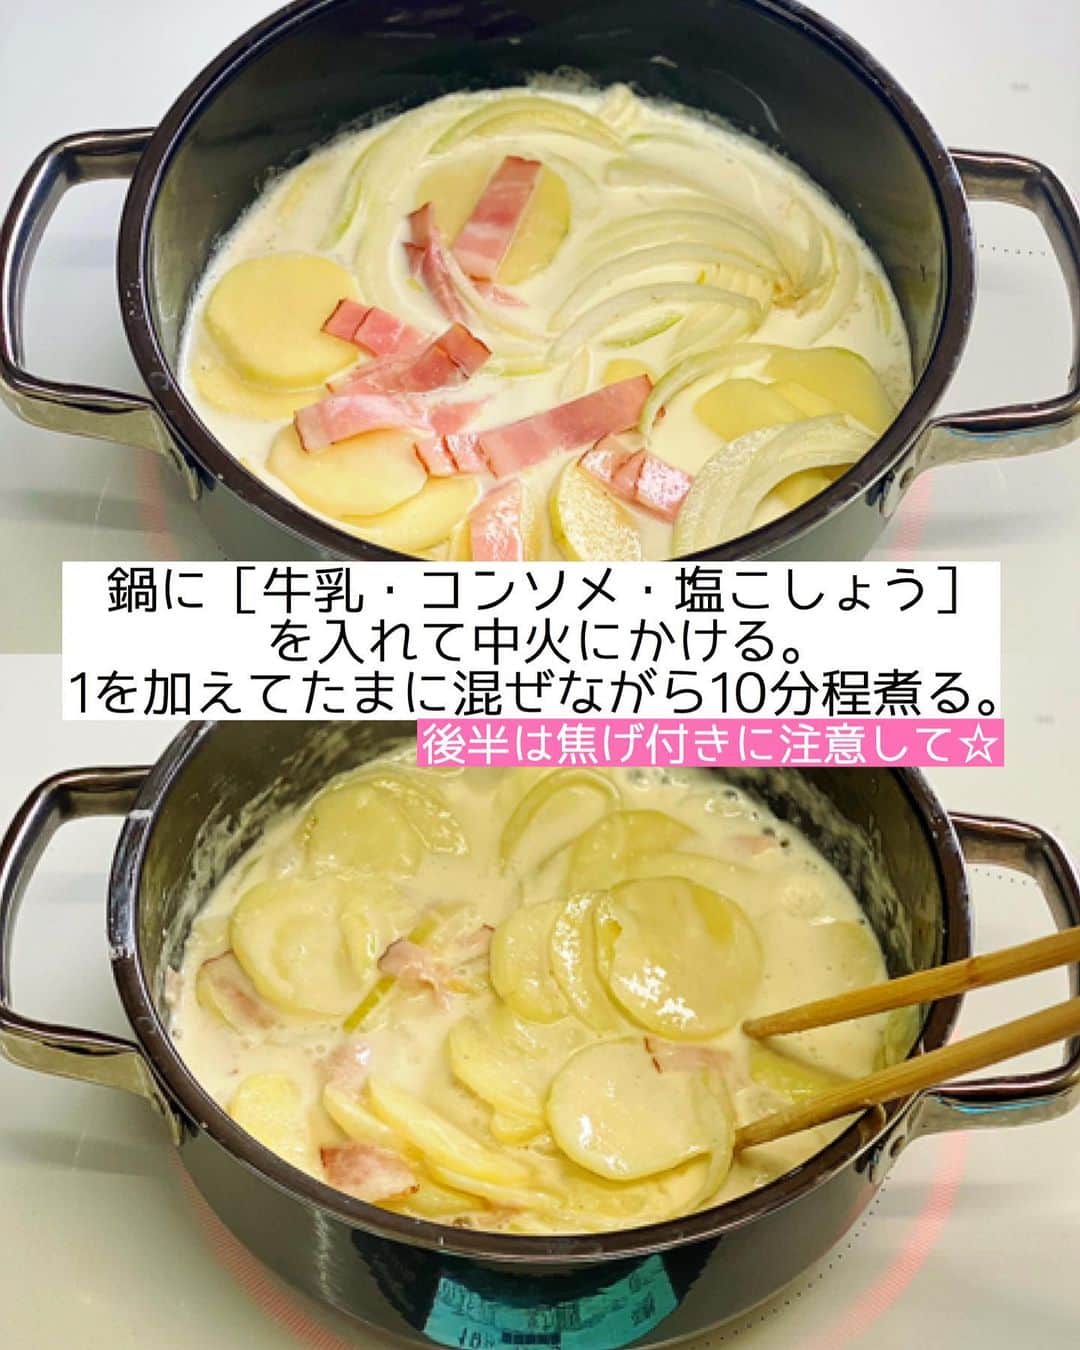 Mizuki【料理ブロガー・簡単レシピ】さんのインスタグラム写真 - (Mizuki【料理ブロガー・簡単レシピ】Instagram)「・﻿ 【#レシピ 】ーーーーーーーーーーー﻿ 煮込んで焼くだけ！ポテトグラタン﻿ ーーーーーーーーーーーーーーーーー﻿ ﻿ 　﻿ ﻿ おはようございます(*^^*)﻿ ﻿ 今日ご紹介させていただくのは﻿ 手間なくできる \ ポテトグラタン /﻿ ﻿ バター・ホワイトソースなし！﻿ しかも炒めない！！﻿ 牛乳で煮込んで焼くだけの﻿ 超簡単レシピです(*´艸`)﻿ ﻿ シンプルな手順と材料でできるので﻿ よかったらお試し下さいね(*^^*)﻿ ﻿ ﻿ ﻿ ＿＿＿＿＿＿＿＿＿＿＿＿＿＿＿＿＿＿＿＿﻿ 【2〜3人分】﻿ じゃがいも...3個(350g)﻿ ベーコン...2枚﻿ 玉ねぎ...1/4個﻿ ●牛乳...300ml﻿ ●コンソメ...小1/2﻿ ●塩こしょう...少々﻿ ピザ用チーズ...60g﻿ パセリ(みじん切り)...適量﻿ ﻿ 1.じゃがいもは皮を剥いて5mm厚さの輪切りにする。ベーコンは1cm幅に切る。玉ねぎは薄切りにする。﻿ 2.鍋に●を入れて中火にかける。煮立ったら1を加え、たまに混ぜながら10分程煮る。﻿ 3.じゃがいもが柔らかくなったら耐熱皿に入れ、チーズをのせてトースターで焼く。仕上げにパセリを振る。﻿ ￣￣￣￣￣￣￣￣￣￣￣￣￣￣￣￣￣￣￣￣﻿ ﻿ ﻿ ﻿ 《ポイント》﻿ ♦︎直径20cmの鍋を使用しています♩﻿ ♦︎煮ている時、じゃがいもが鍋底にくっつきやすいので(特に後半は)混ぜながら煮込んで下さい♩焦げ付きそうな場合は火加減を落として下さい☆﻿ ﻿ 　﻿ ﻿ ﻿ ﻿ ﻿ 💬💬💬＿＿＿＿＿＿＿＿＿＿＿＿＿＿＿﻿ ホットケーキミックスで作る﻿ 《バナナパウンドケーキ》の作り方動画を﻿ YouTubeにアップしました☺️﻿ 混ぜて焼くだけどしっとり仕上がる﻿ おすすめレシピです💗﻿ よかったらお試し下さいね🥰﻿ ↓﻿ 【YouTube】🔍奇跡のキッチン🔍﻿ (ストーリー・ハイライトからも飛べます✨)﻿ ＿＿＿＿＿＿＿＿＿＿＿＿＿＿＿＿＿＿＿＿﻿ ﻿ ﻿ ﻿ ﻿ ﻿ ﻿ ﻿ ⭐️発売中⭐️﻿ ＿＿＿＿＿＿＿＿＿＿＿＿＿＿＿＿＿＿﻿ ホケミレシピの決定版♩﻿ \はじめてでも失敗しない/﻿ 📙#ホットケーキミックスのお菓子 📙﻿ ﻿ NHKまる得マガジンテキスト☆﻿ ホットケーキミックスで﻿ 📗絶品おやつ&意外なランチ📗﻿ ﻿ しんどくない献立、考えました♩﻿ \15分でいただきます/﻿ 📕#Mizukiの2品献立 📕﻿ ﻿ 和食をもっとカジュアルに♩﻿ \毎日のごはんがラクになる/﻿ 📘Mizukiの今どき和食 📘﻿ ﻿ 重版しました！﻿ ありがとうございます😭﻿ 📗ラクしておいしい！#1品晩ごはん 📗﻿ ﻿ 摂食障害から料理研究家になるまでを綴った﻿ はじめてのエッセイ本﻿ 📙#普通のおいしいをつくるひと 📙﻿ ￣￣￣￣￣￣￣￣￣￣￣￣￣￣￣￣￣￣￣﻿ ﻿ ﻿ ﻿ ﻿ ﻿ ＿＿＿＿＿＿＿＿＿＿＿＿＿＿＿＿＿＿﻿ レシピを作って下さった際や﻿ レシピ本についてのご投稿には﻿ タグ付け( @mizuki_31cafe )して﻿ お知らせいただけると嬉しいです😊💕﻿ ￣￣￣￣￣￣￣￣￣￣￣￣￣￣￣￣￣￣﻿ ﻿ ﻿ ﻿ ﻿ ﻿ #ポテトグラタン#じゃがいも#牛乳#グラタン#バターなし#Mizuki#簡単レシピ#時短レシピ#節約レシピ#料理#フーディーテーブル#マカロニメイト#おうちごはん#デリスタグラマー#料理好きな人と繋がりたい#おうちごはんlover#写真好きな人と繋がりたい#foodpic#cooking#recipe#lin_stagrammer#foodporn#yummy#f52grams#ポテトグラタンm」2月18日 7時14分 - mizuki_31cafe